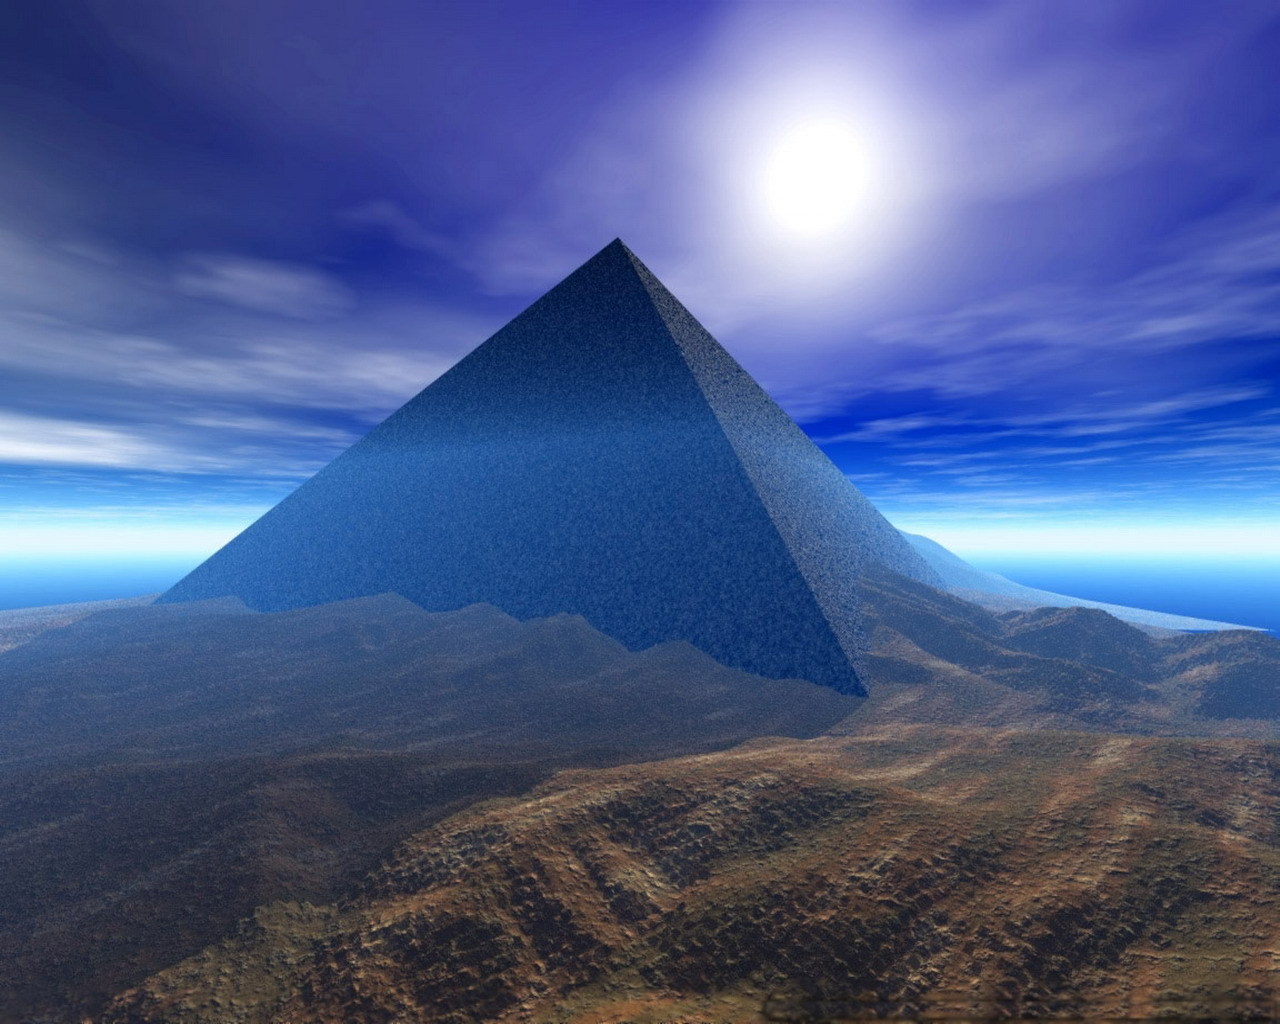 pyramids, background, blue